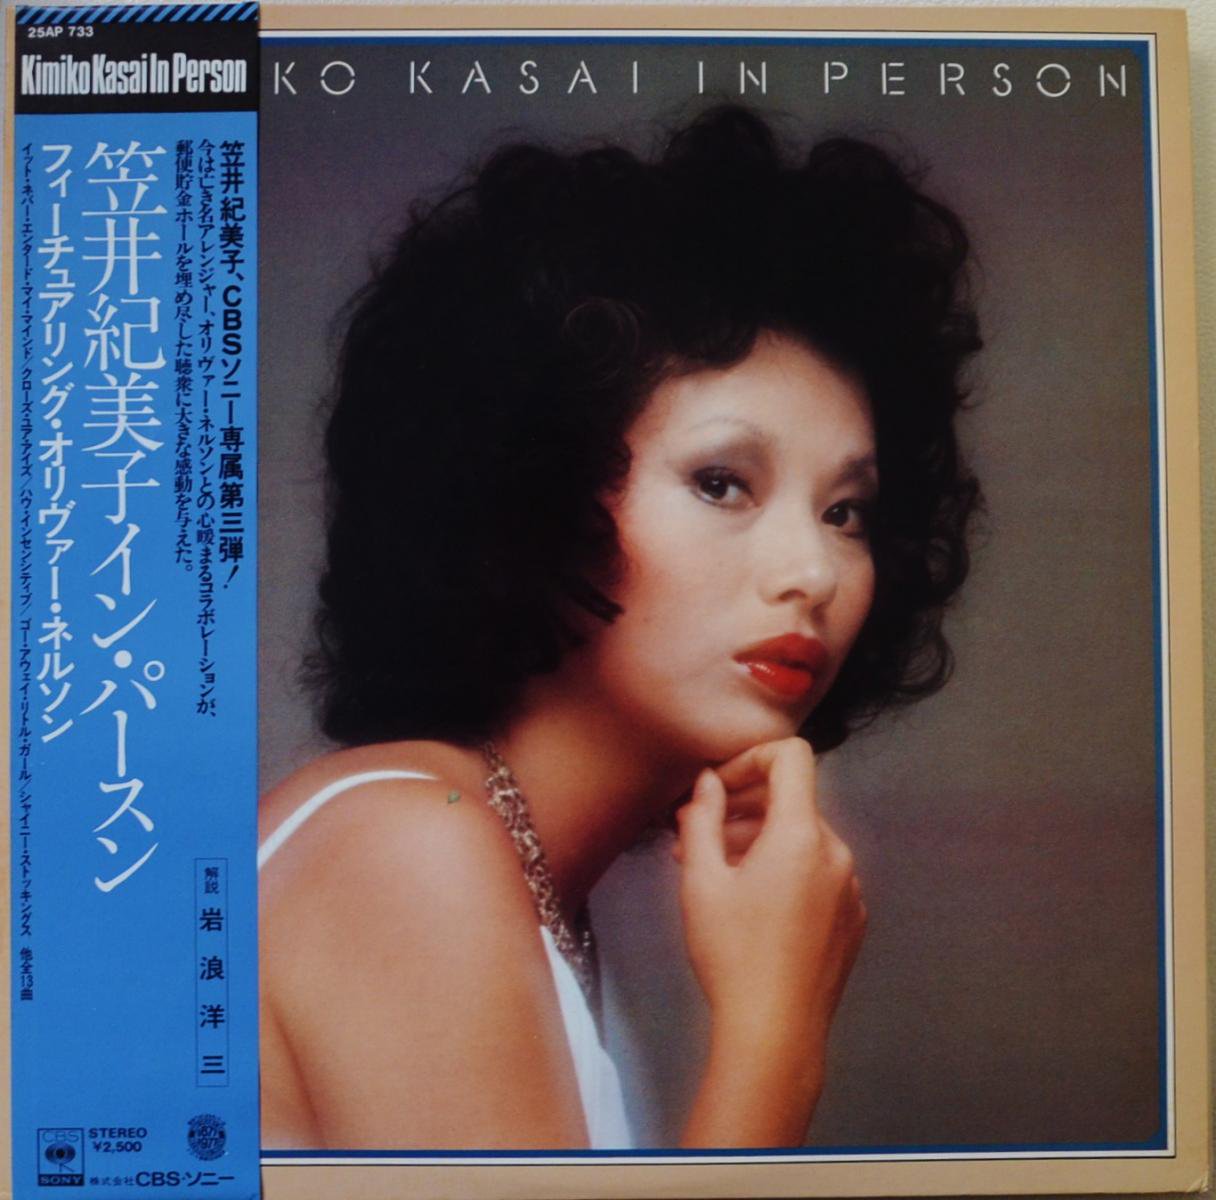 笠井紀美子 Kimiko Kasai フィーチュアリング オリヴァー ネルソン イン パースン In Person Lp Hip Tank Records